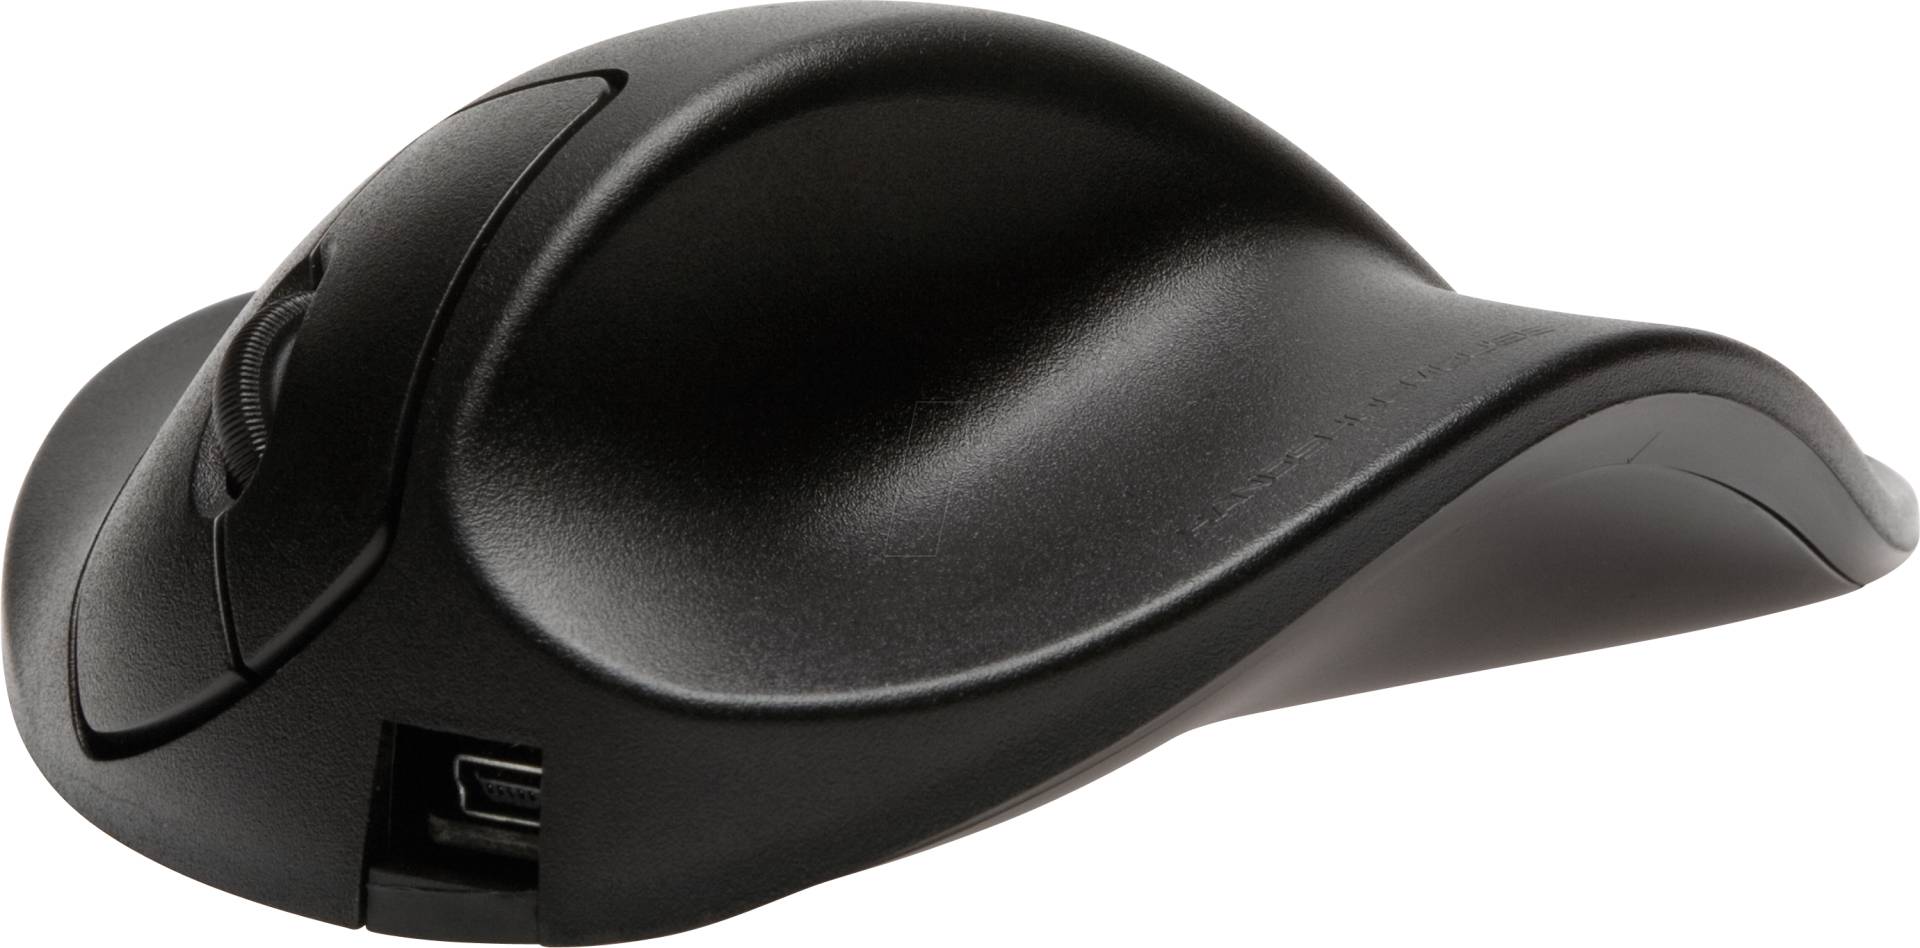 HSM L2WB-LC - Maus (Mouse), USB, ergonomisch, Rechtshänder, large (L) von HANDSHOEMOUSE